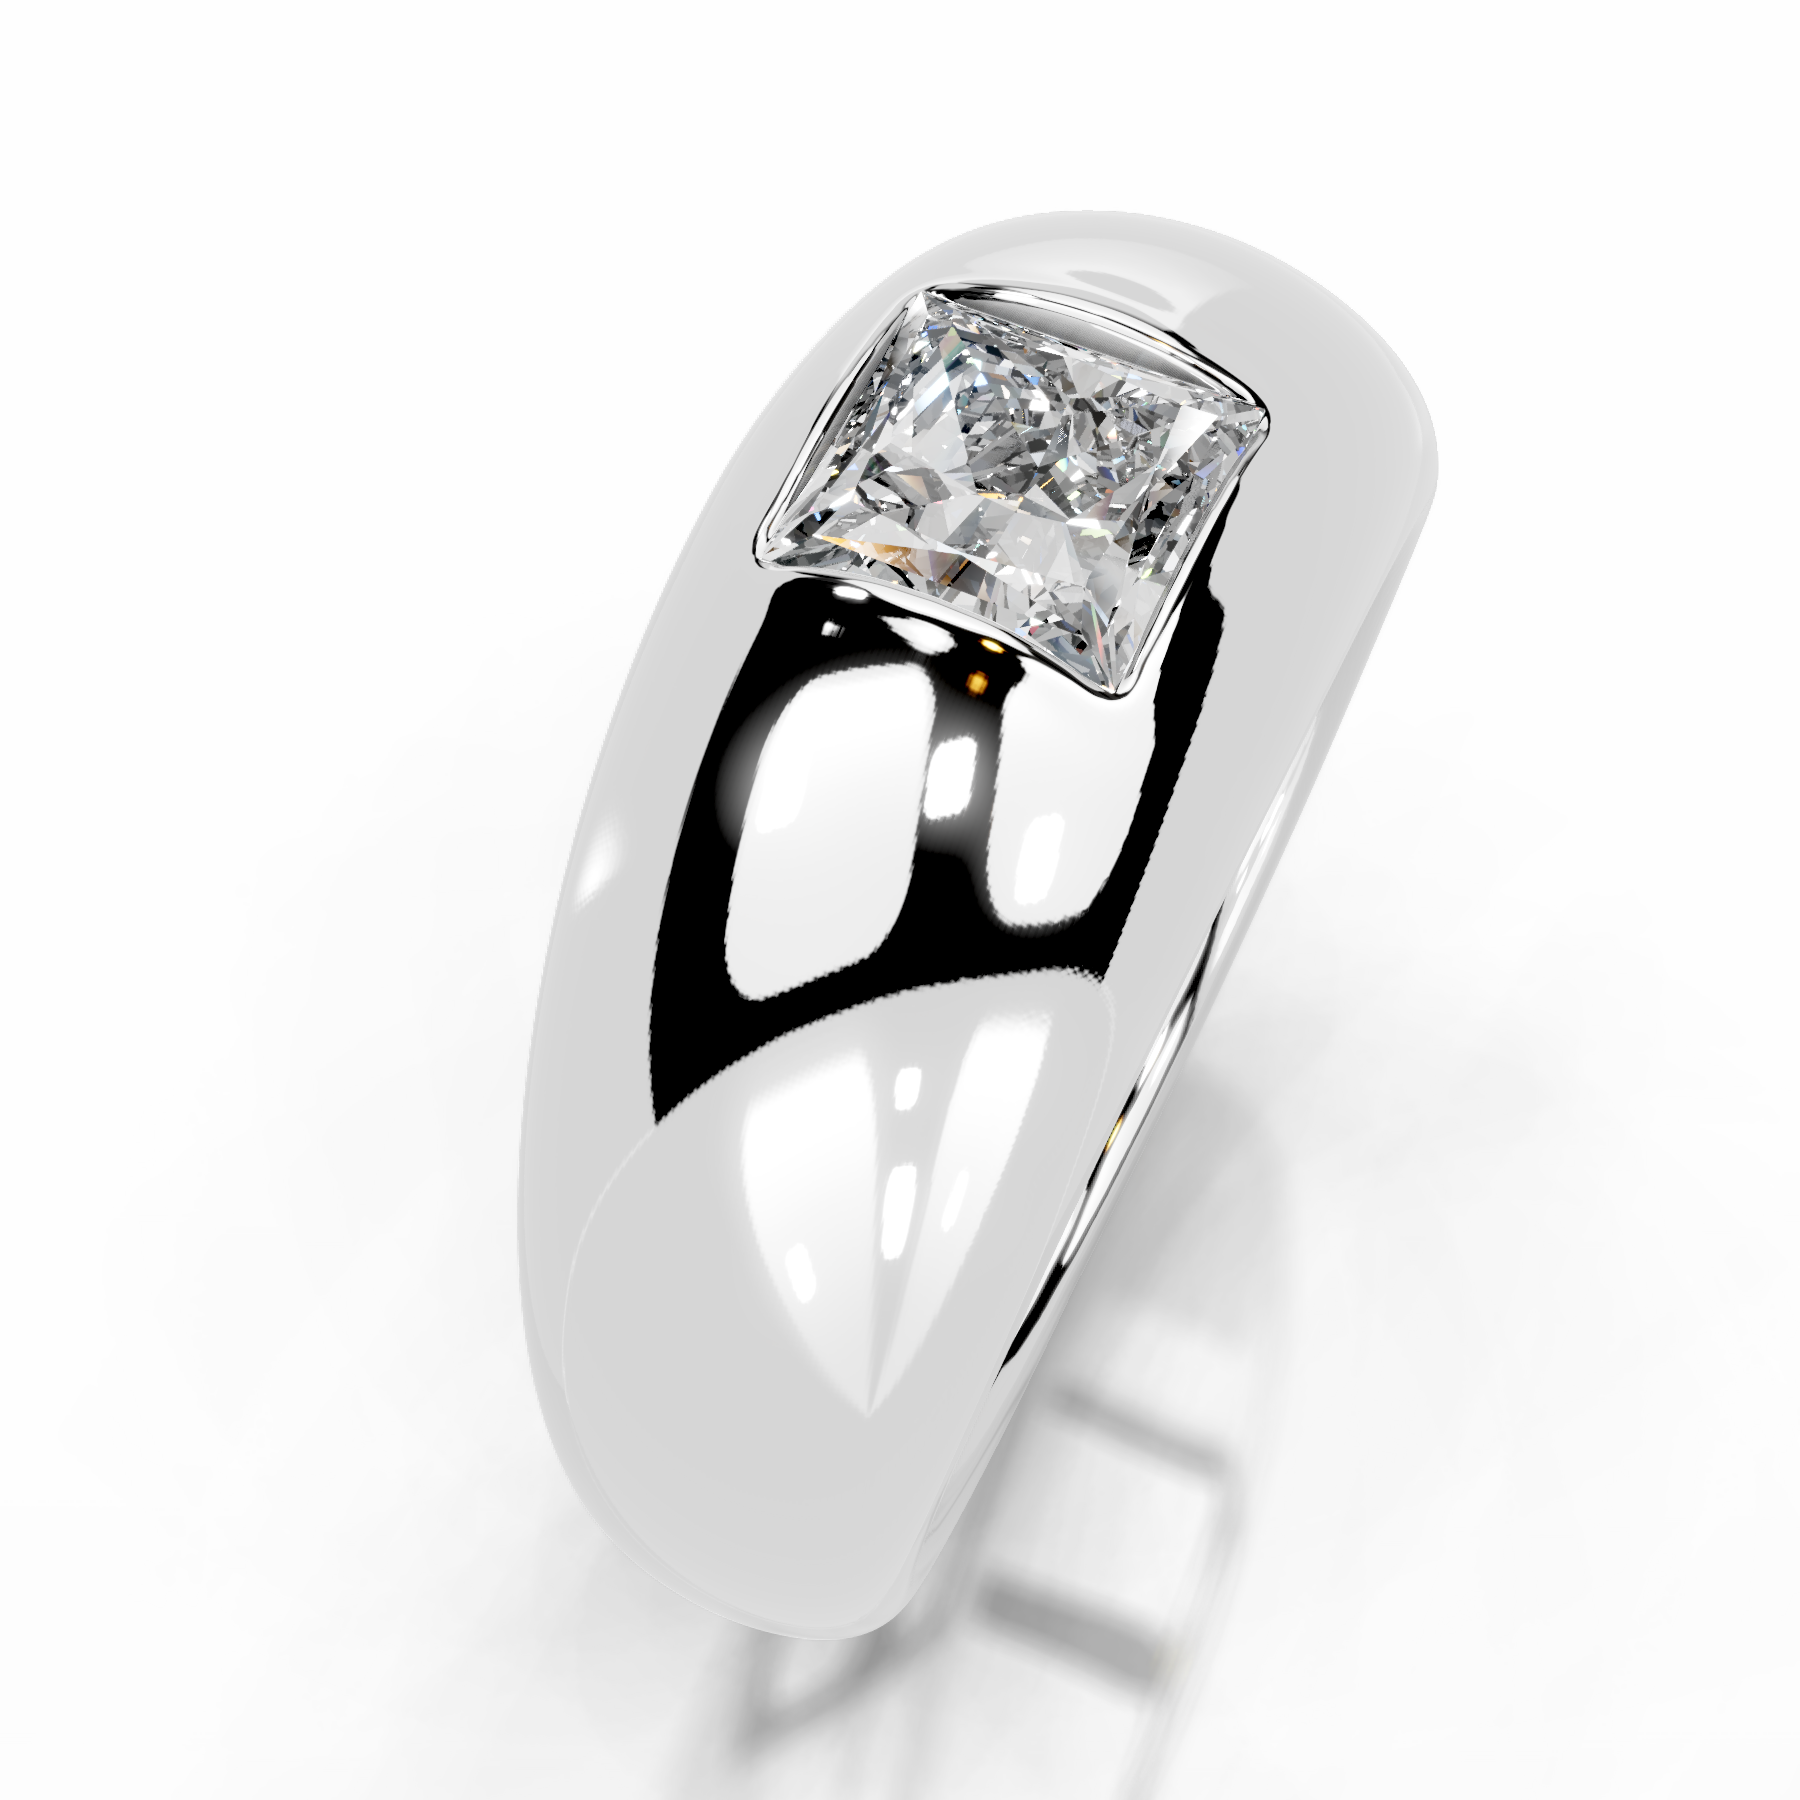 Aaliyah Diamond Engagement Ring   (1 Carat) -18K White Gold